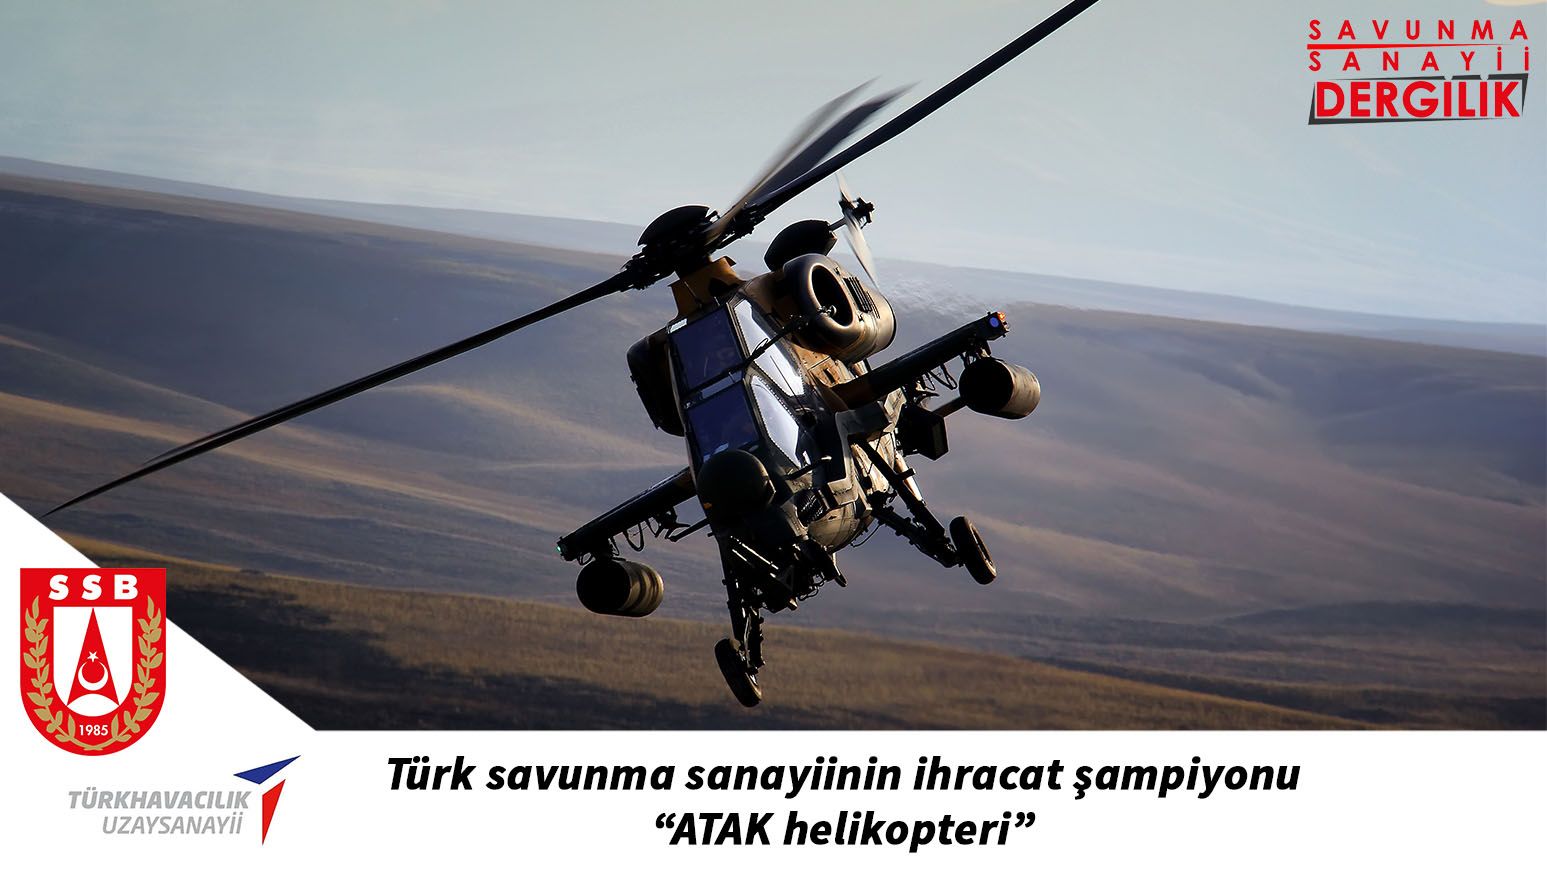 Türk savunma sanayiinin ihracat şampiyonu “ATAK helikopteri”